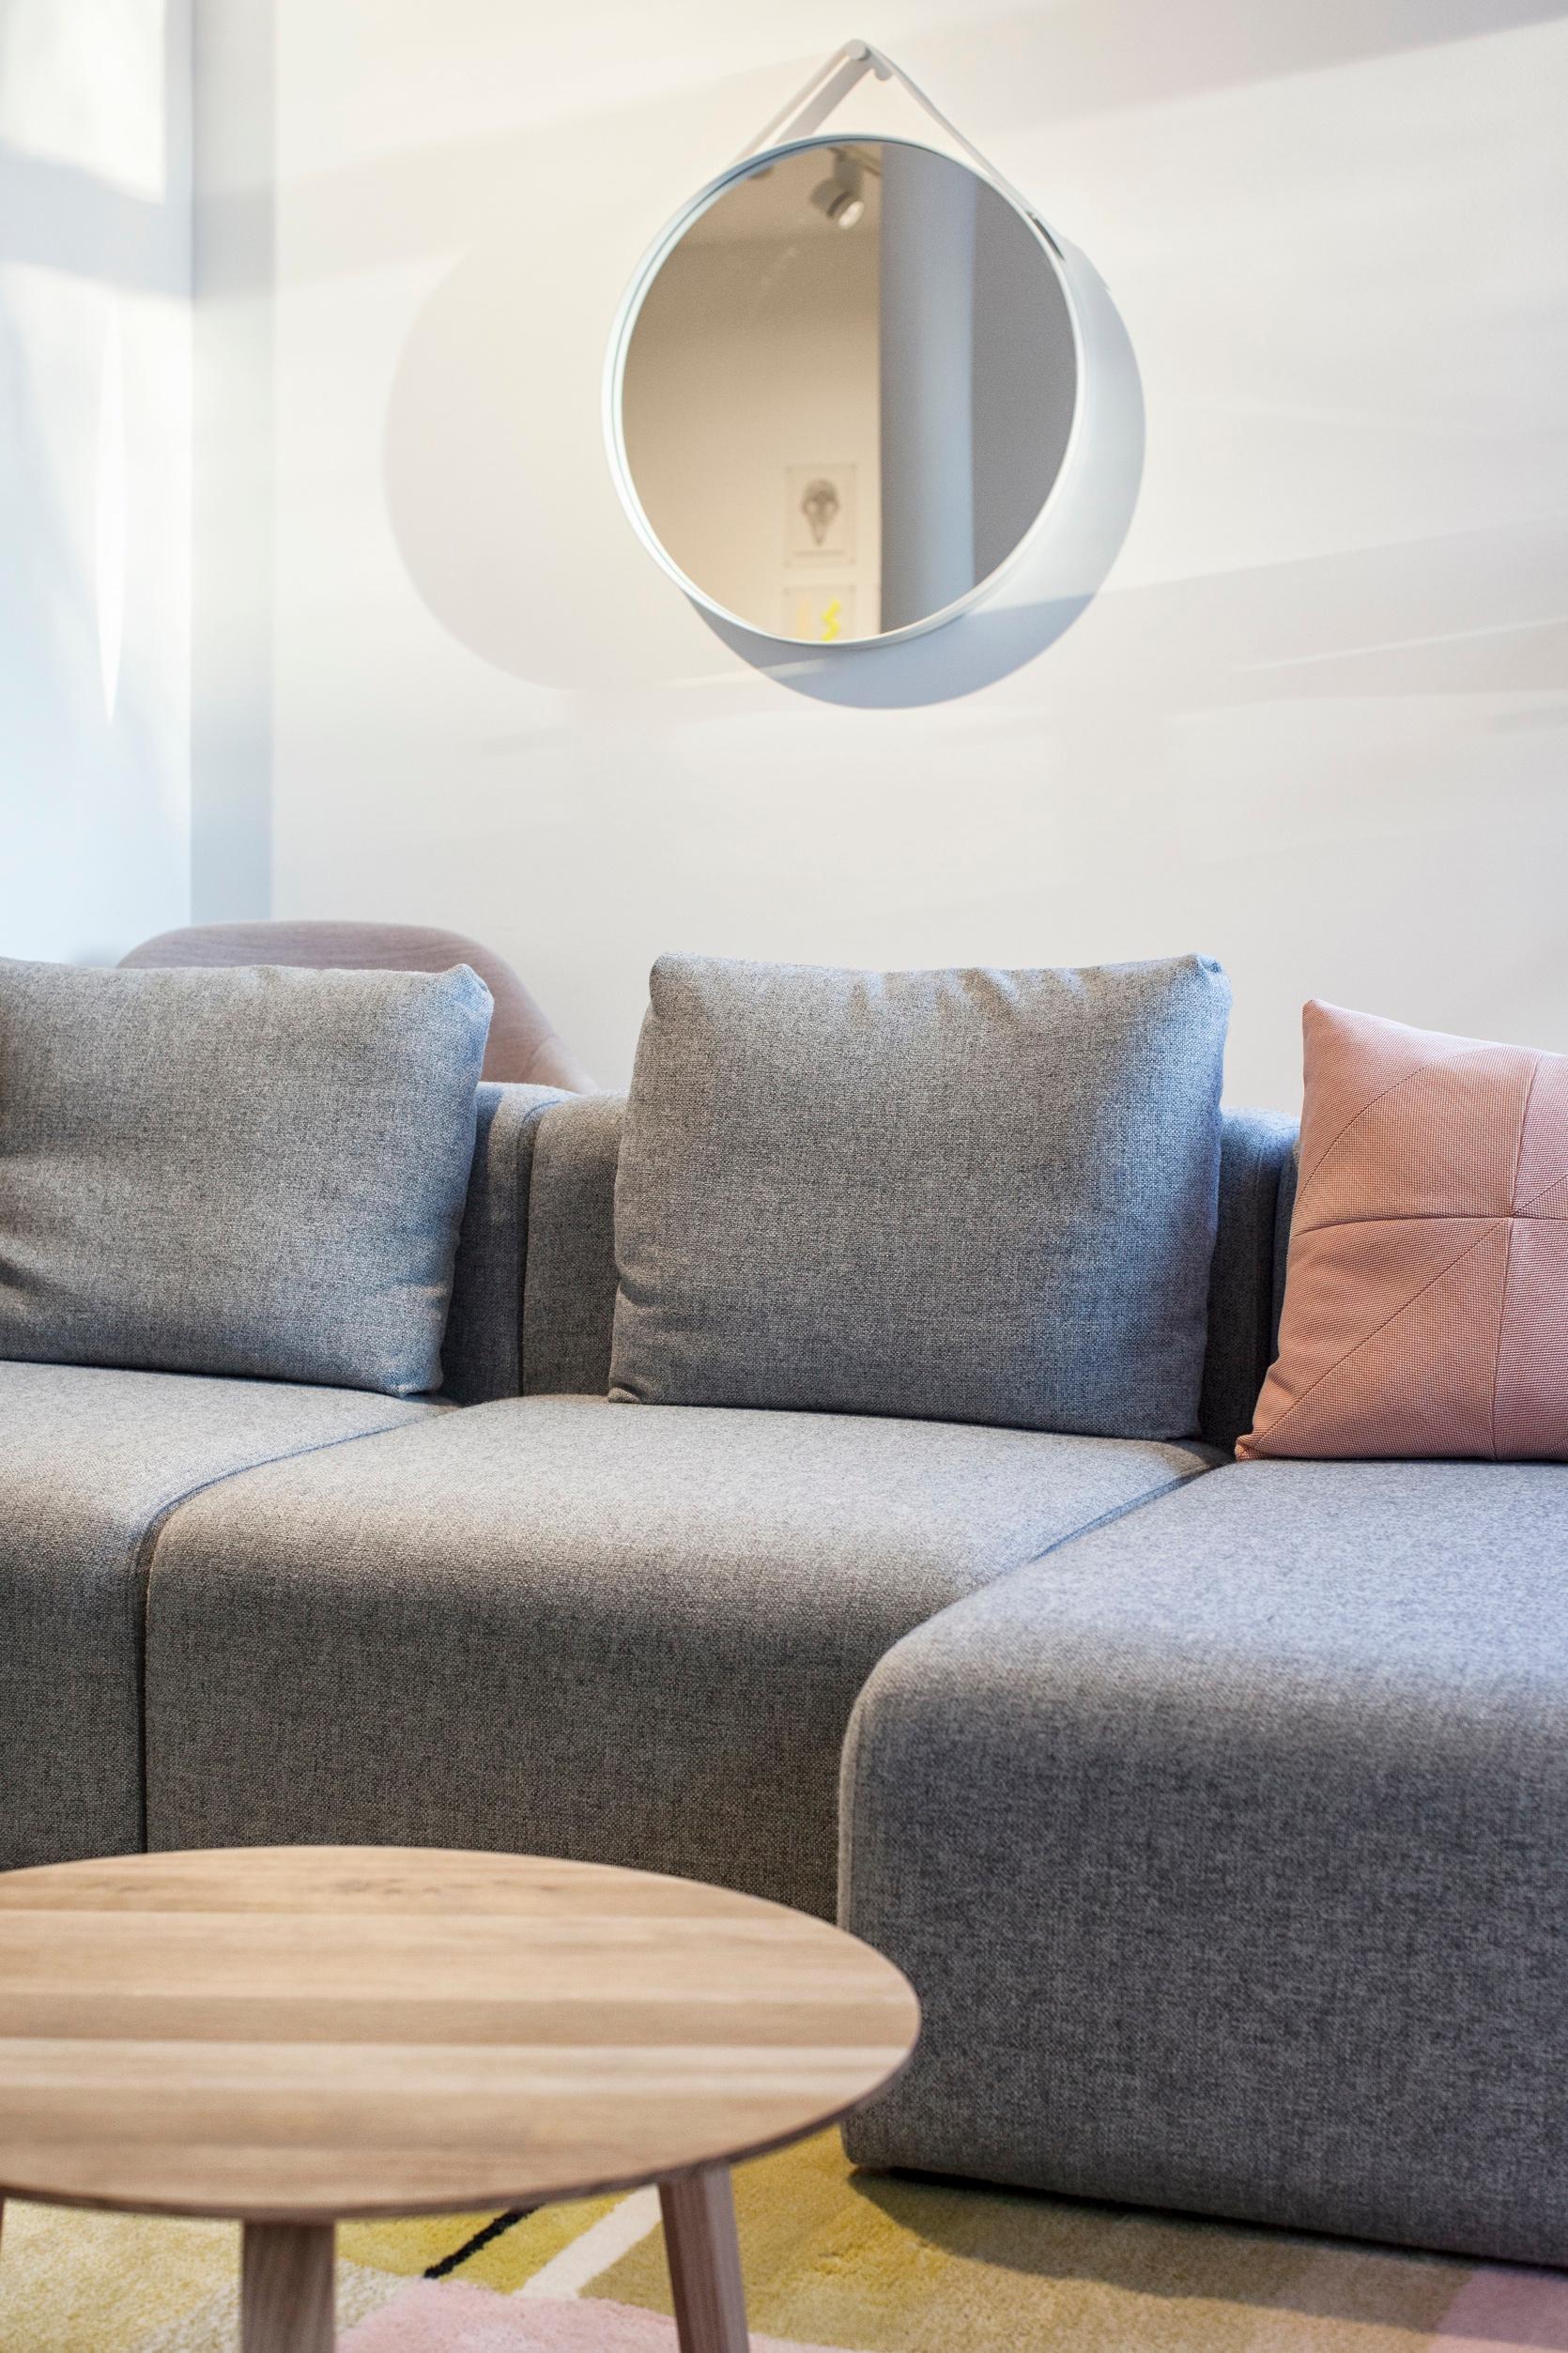 Sofa mit Spiegel #beistelltisch #spiegel #ecksofa #wandspiegel #sofa #grauessofa ©POPO GmbH